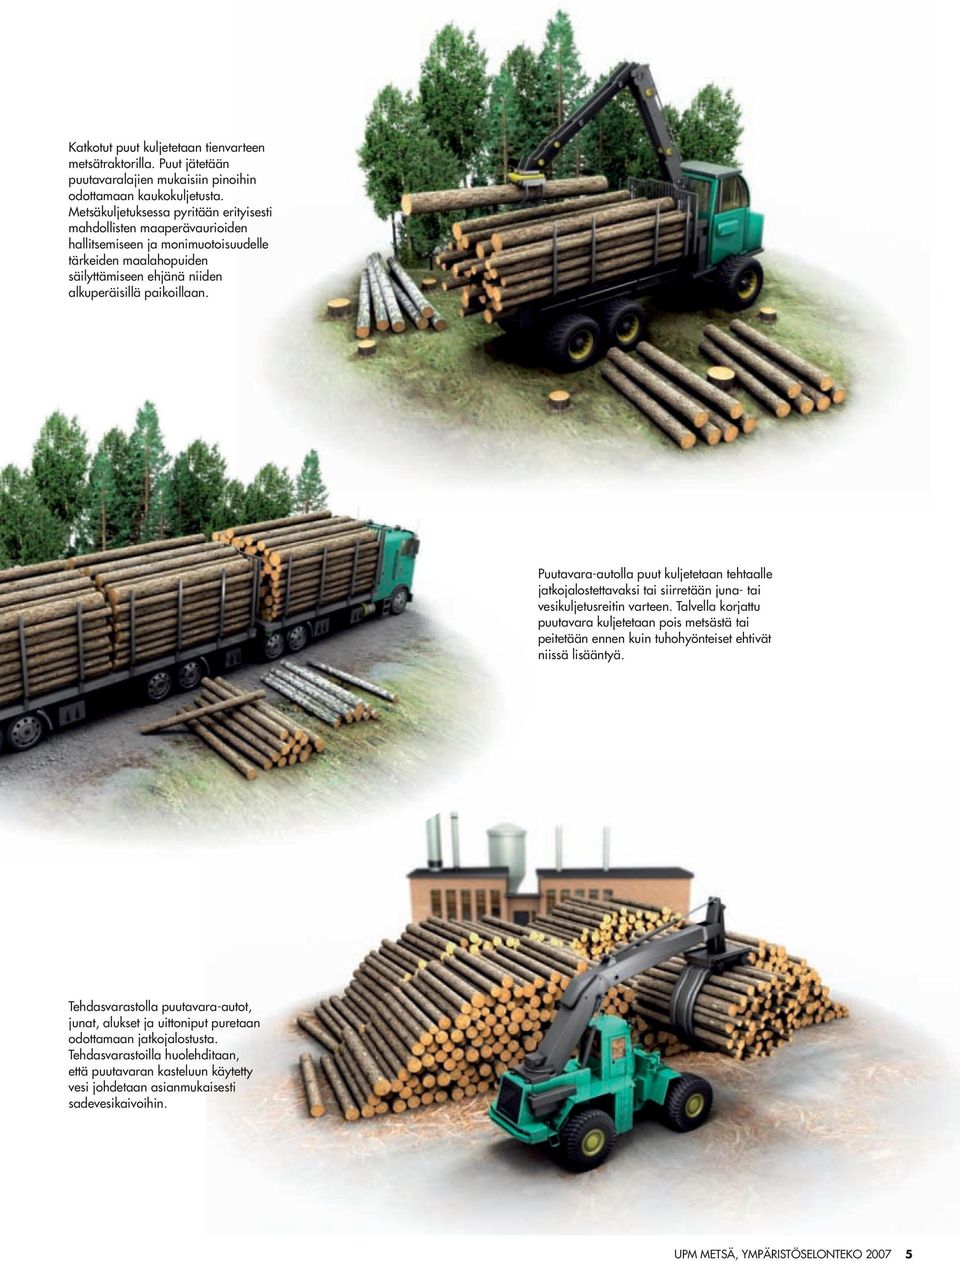 Puutavara-autolla puut kuljetetaan tehtaalle jatkojalostettavaksi tai siirretään juna- tai vesikuljetusreitin varteen.